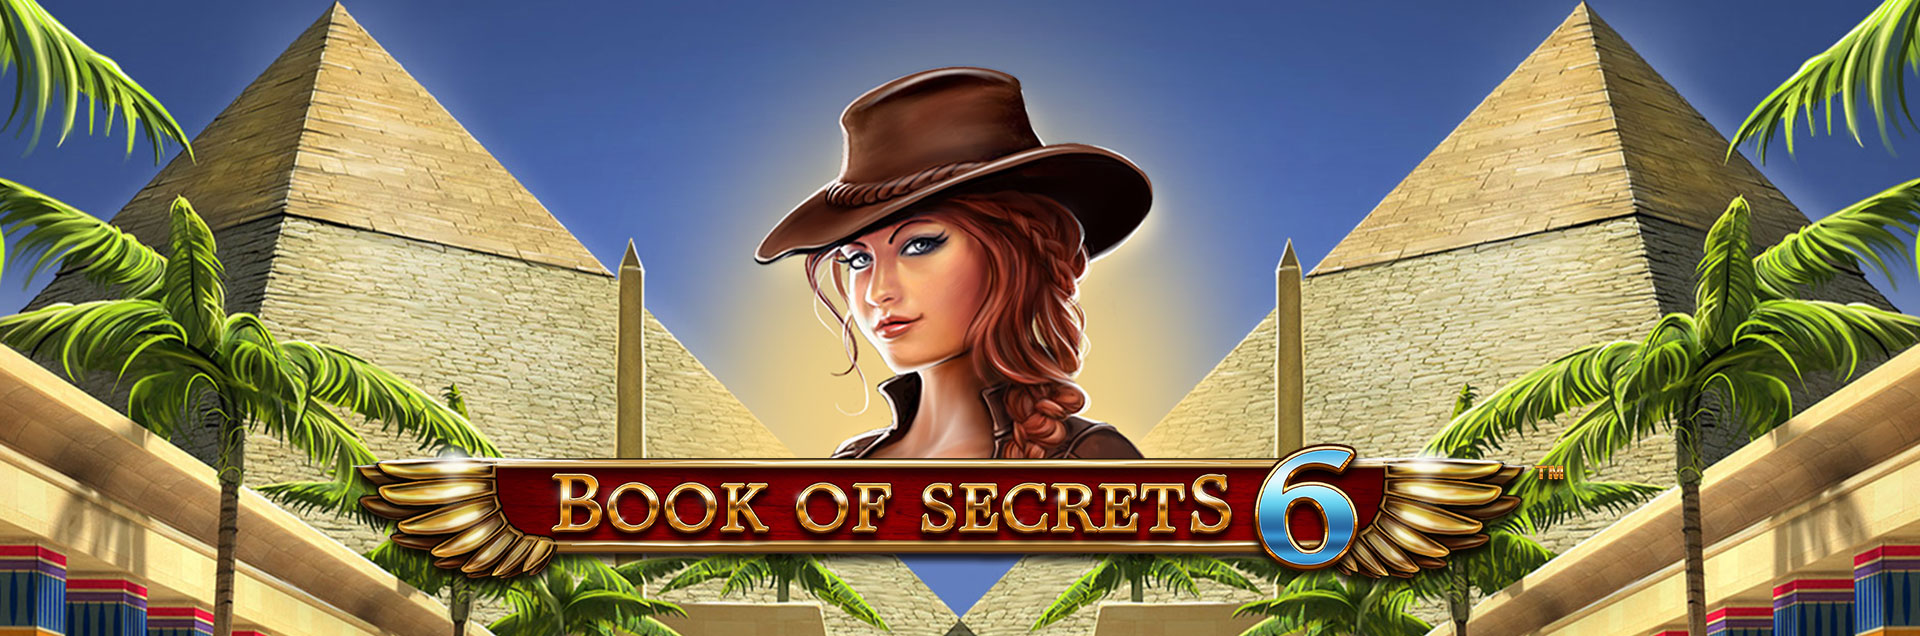 Book of Secrets 6 header games fimal